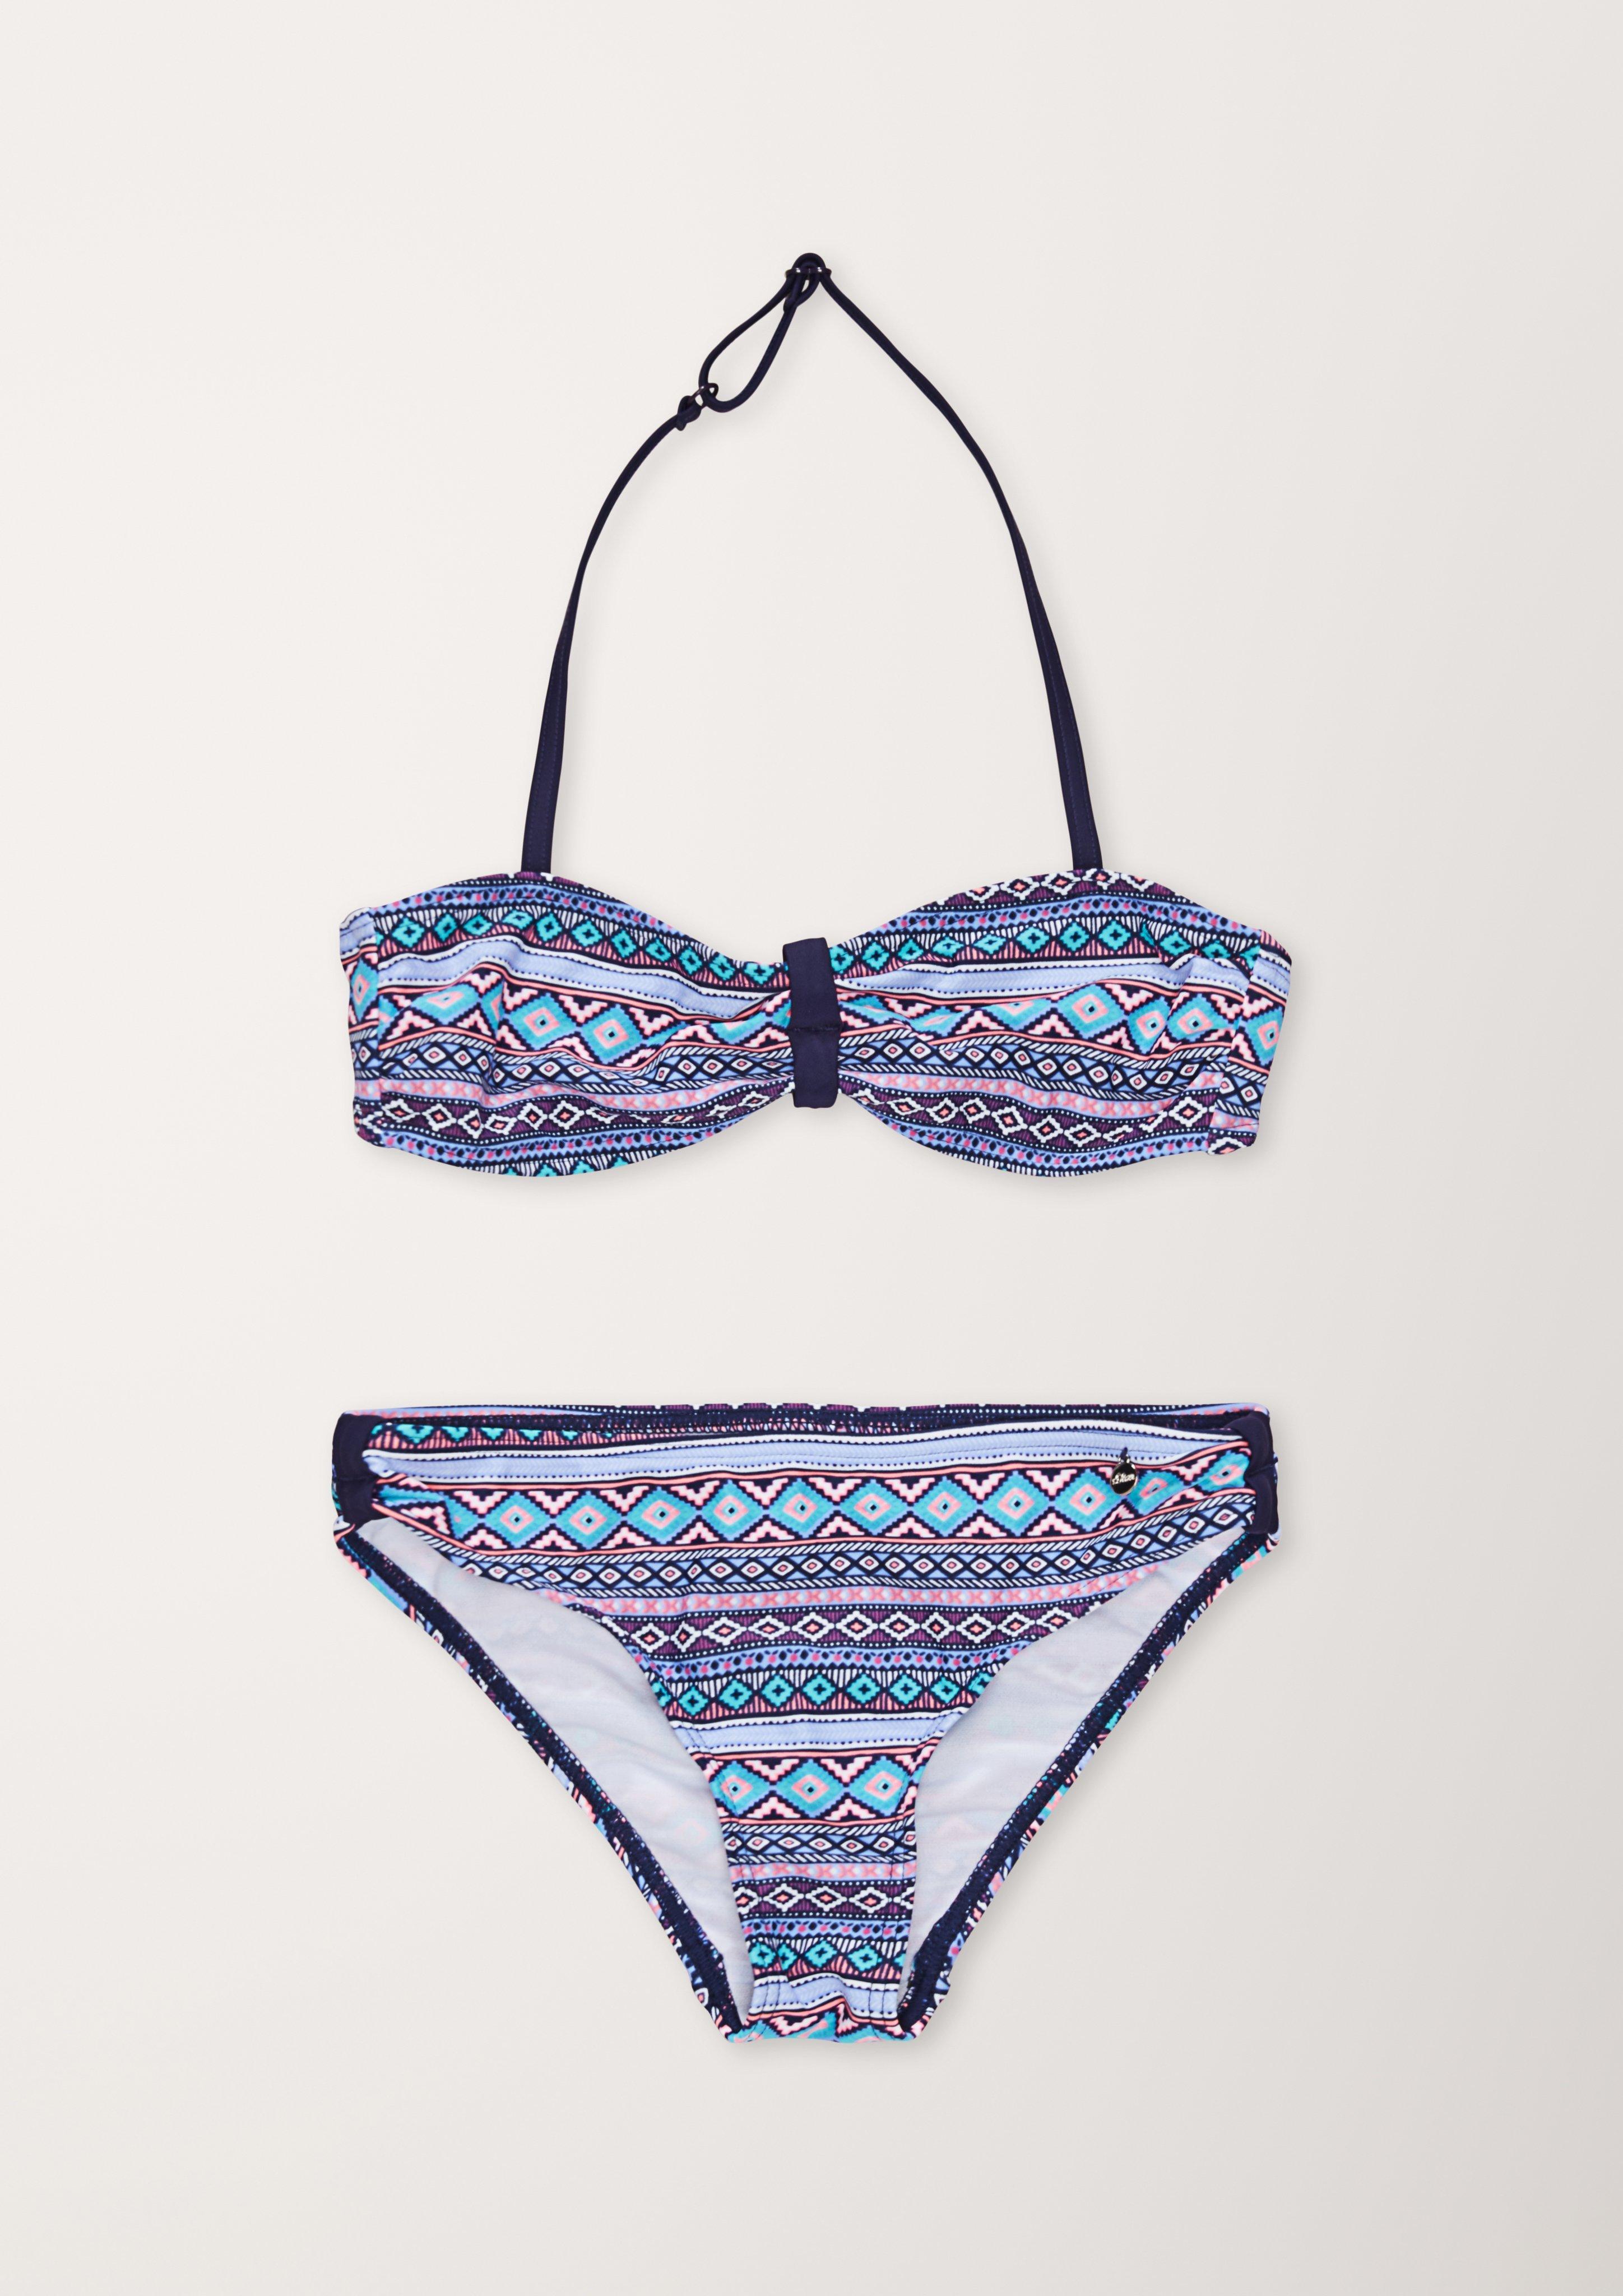 - Bandeau-Bikini mit Ethno-Muster ozeanblau